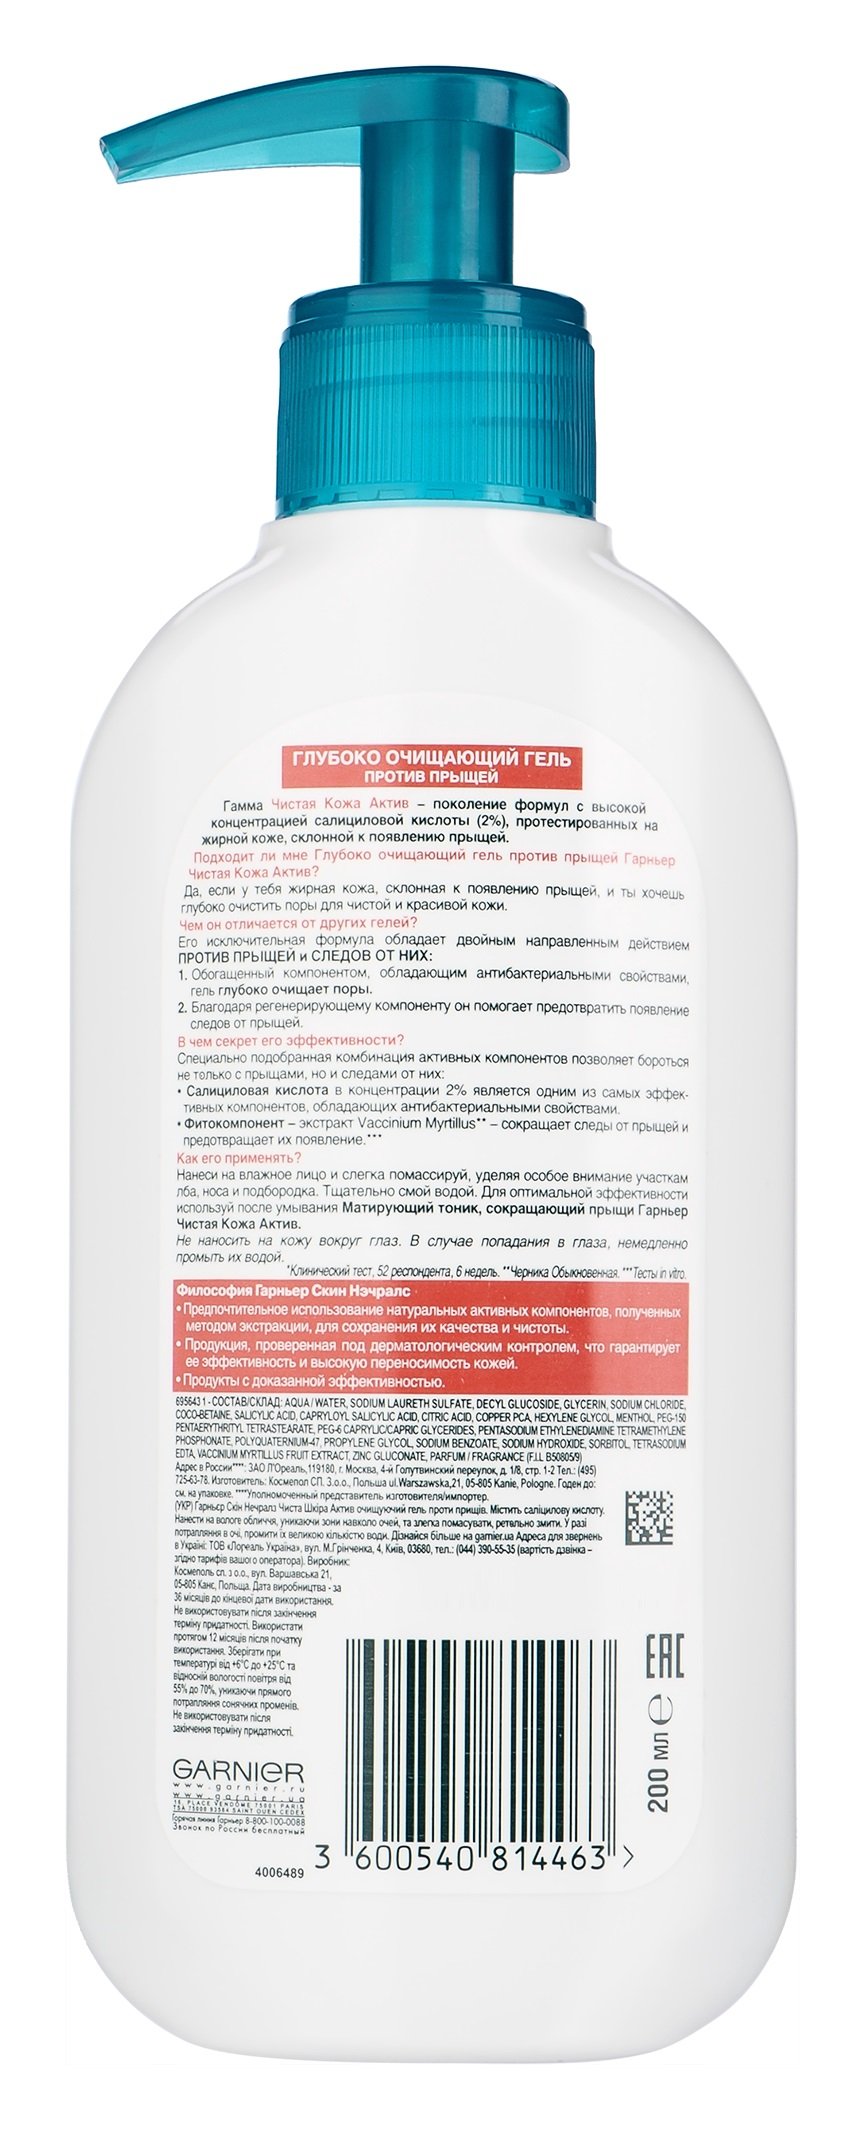 Очищувальний гель від прищів Garnier Skin Naturals Чиста шкіра Актив, 200 мл - фото 2